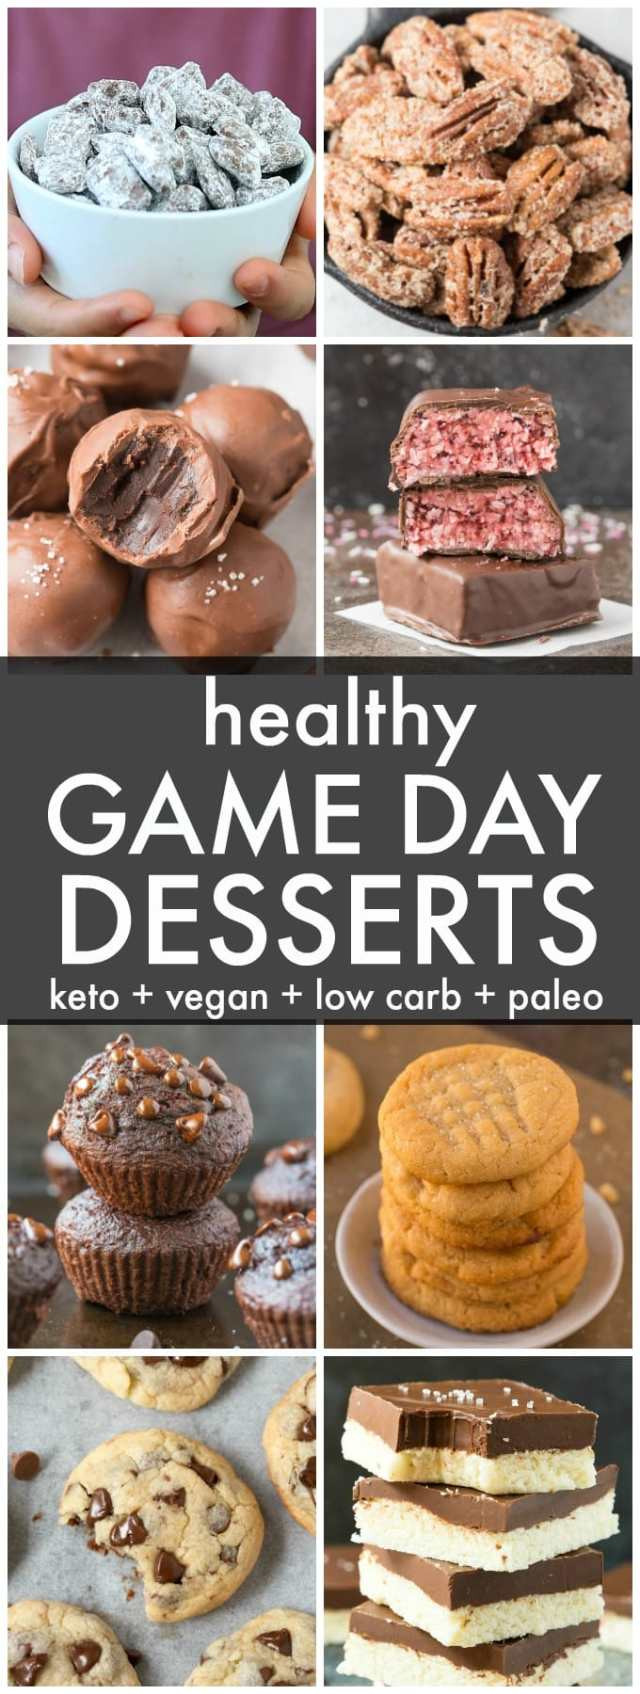 Super Bowl Sweets Recipes
 Healthy Keto Super Bowl Dessert Recipes Vegan